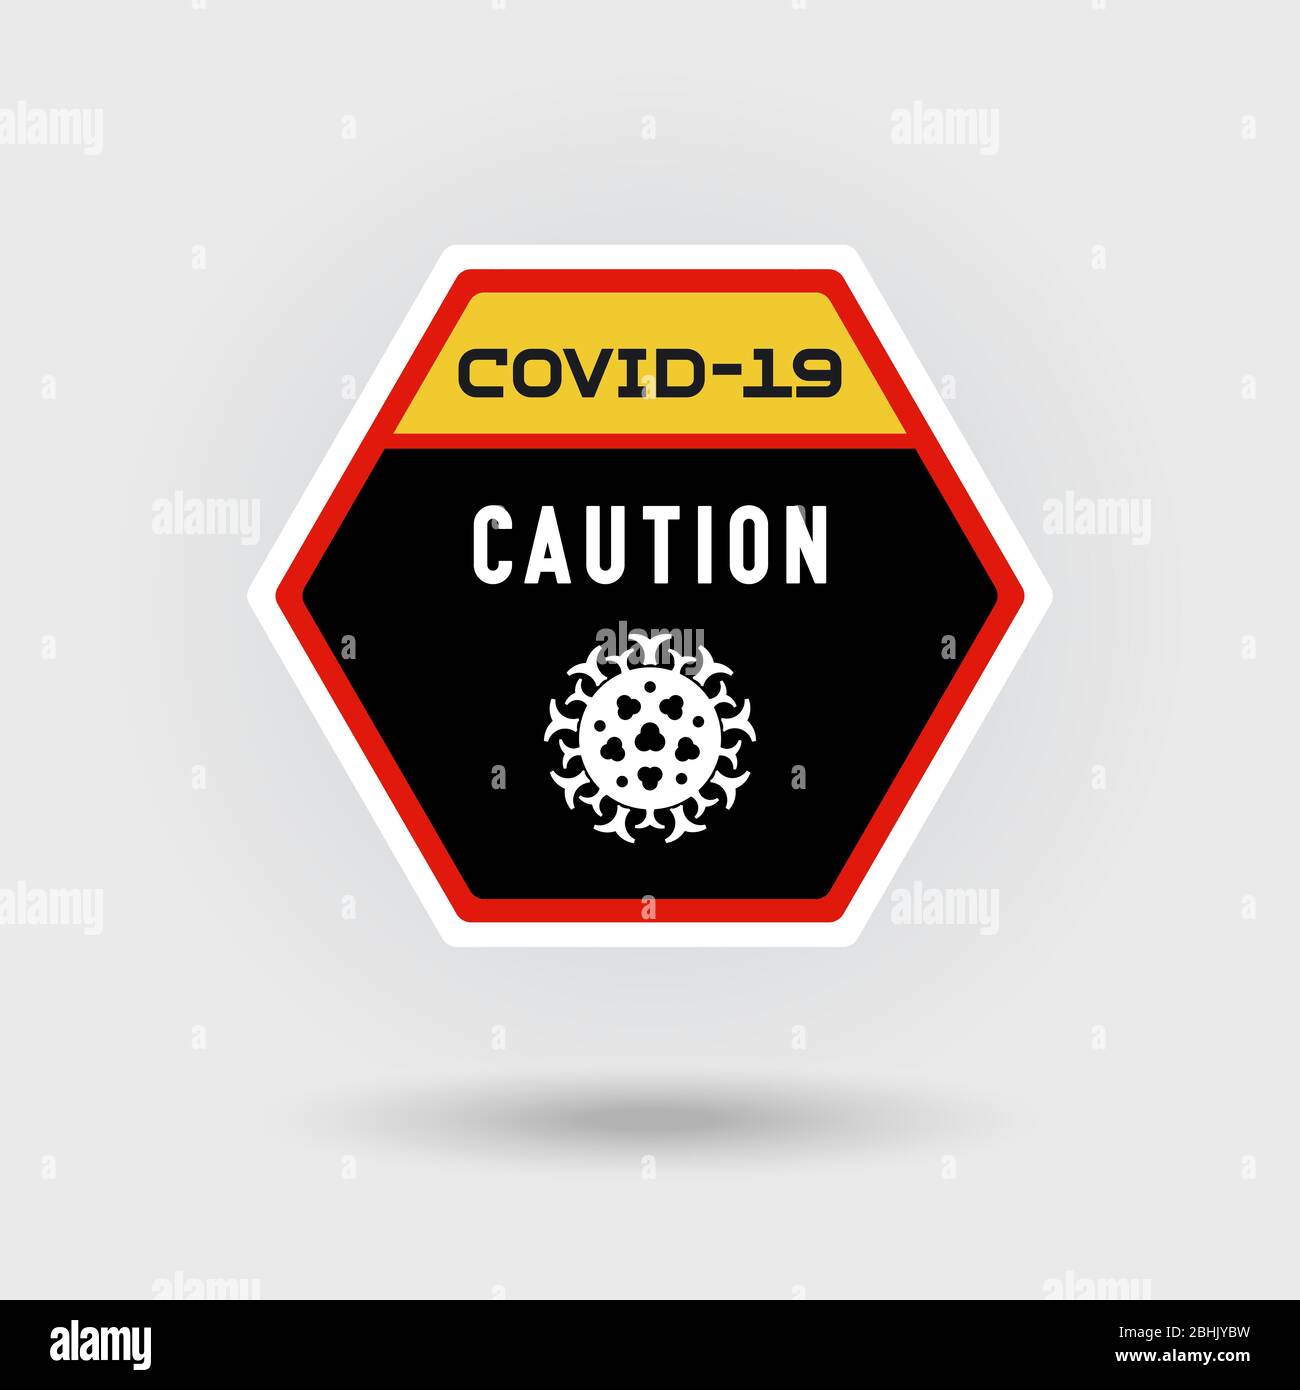 COVID-19 segnale di pericolo di coronavirus. Include un'icona virus stilizzata. Il messaggio avverte di attenzione. Disposizione a forma esagonale. Illustrazione Vettoriale